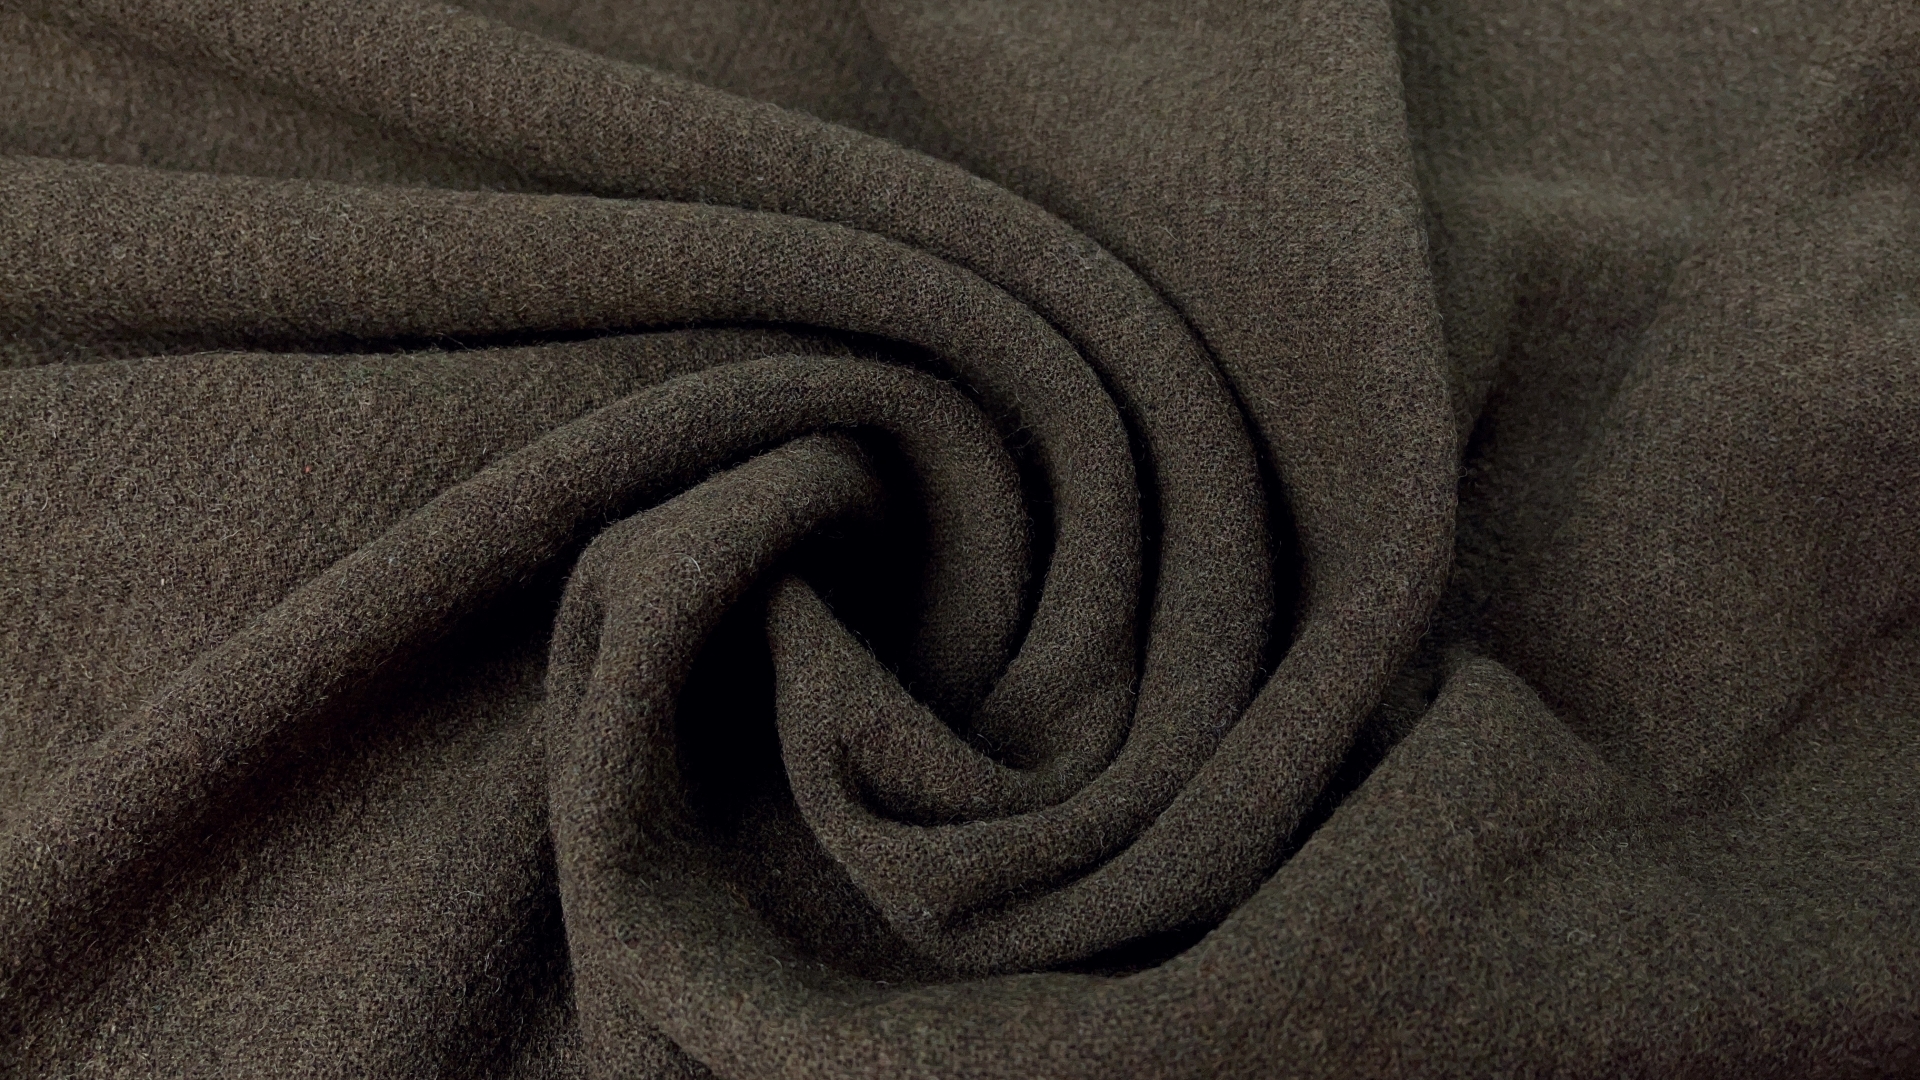 Пальтовая ткань серо-оливкового цвета из коллекционных стоков. Плотная, идеальна для моделей оверсайз.